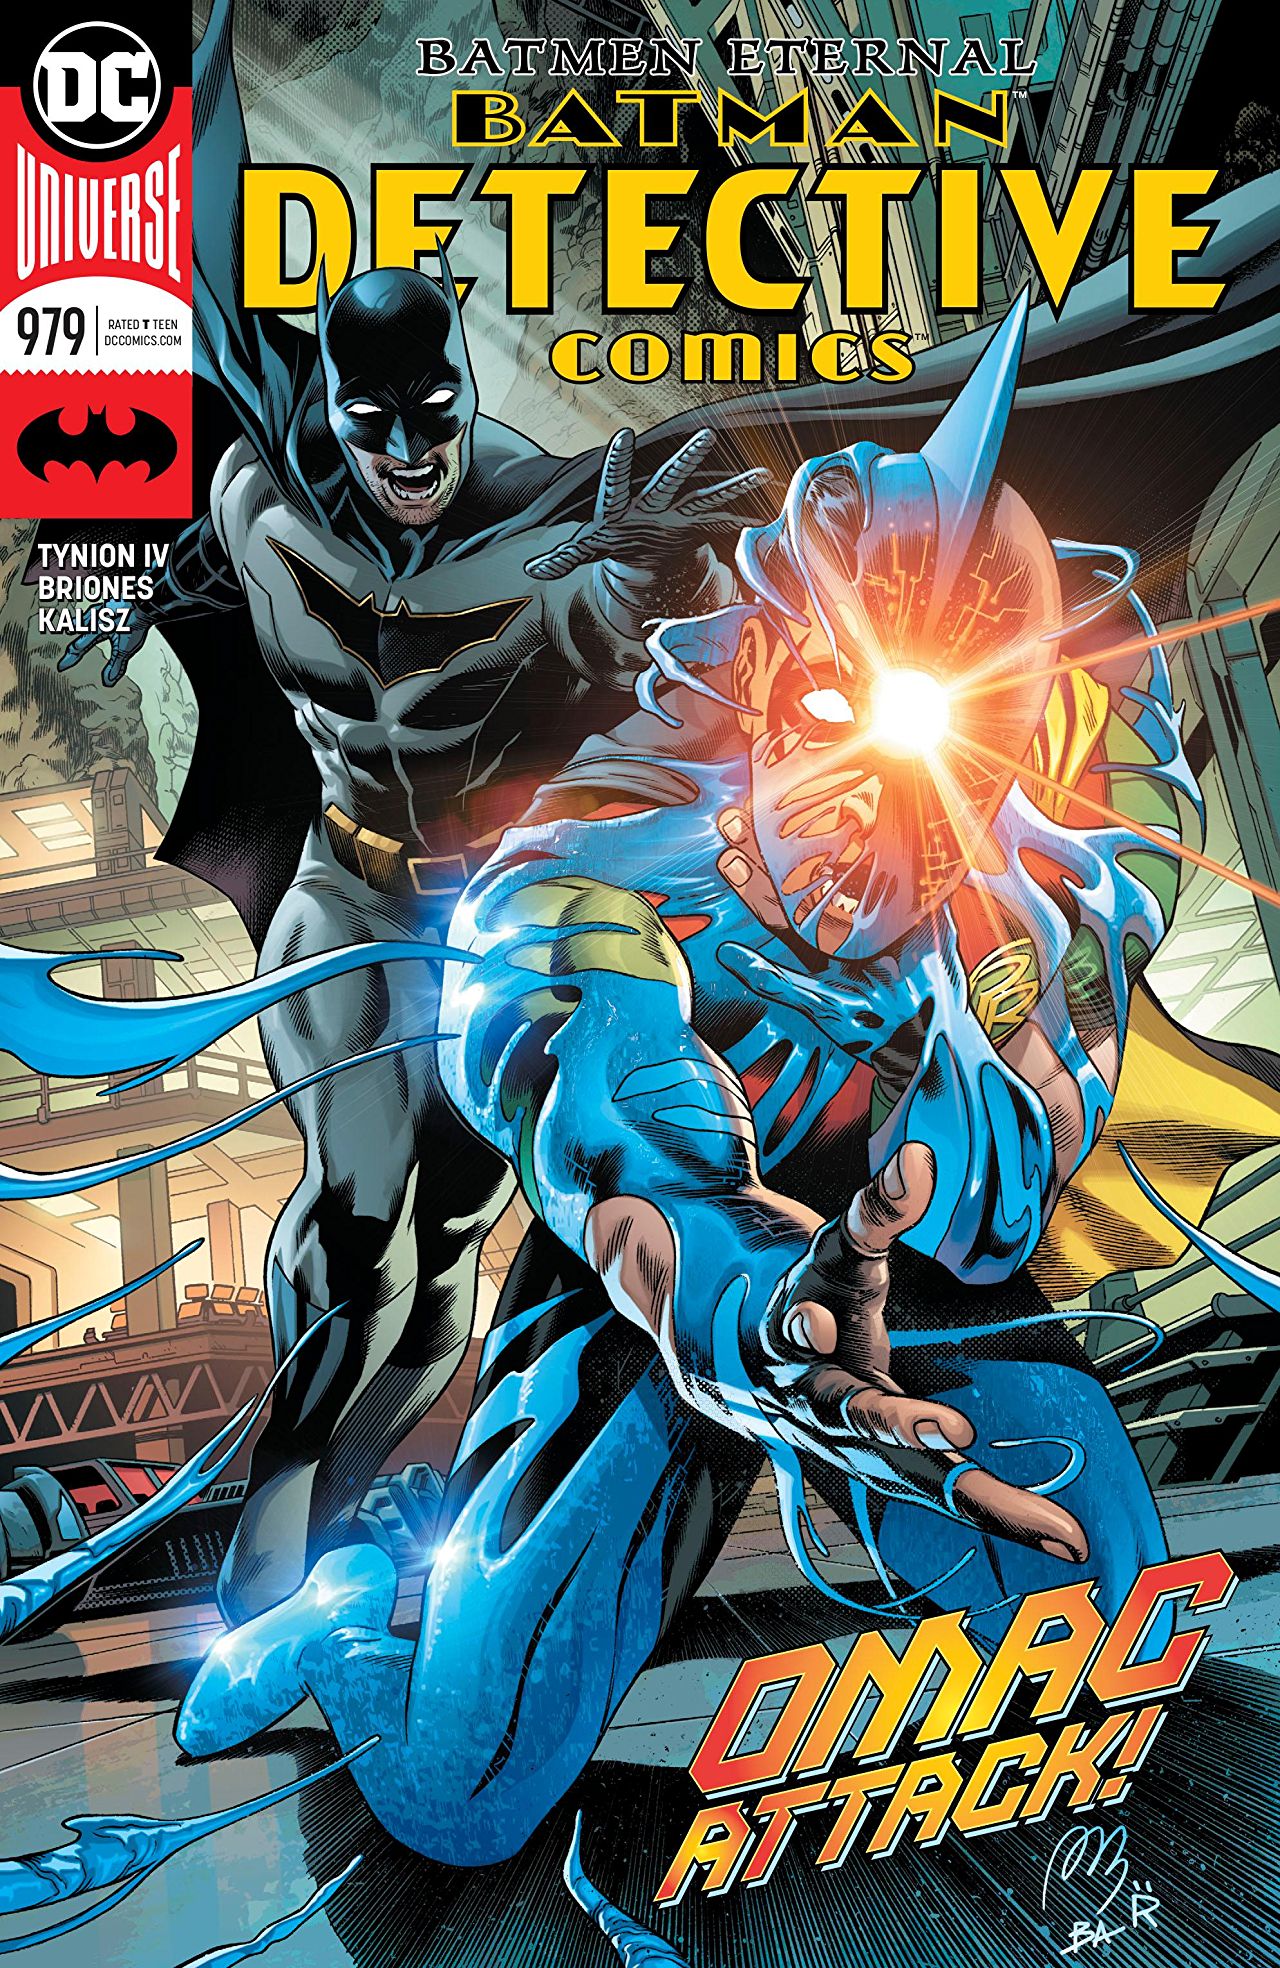 DC COMICS DETECTIVE COMICS #979 JUNE 2018 BATMAN VARIANT 1ST PRINT NM 